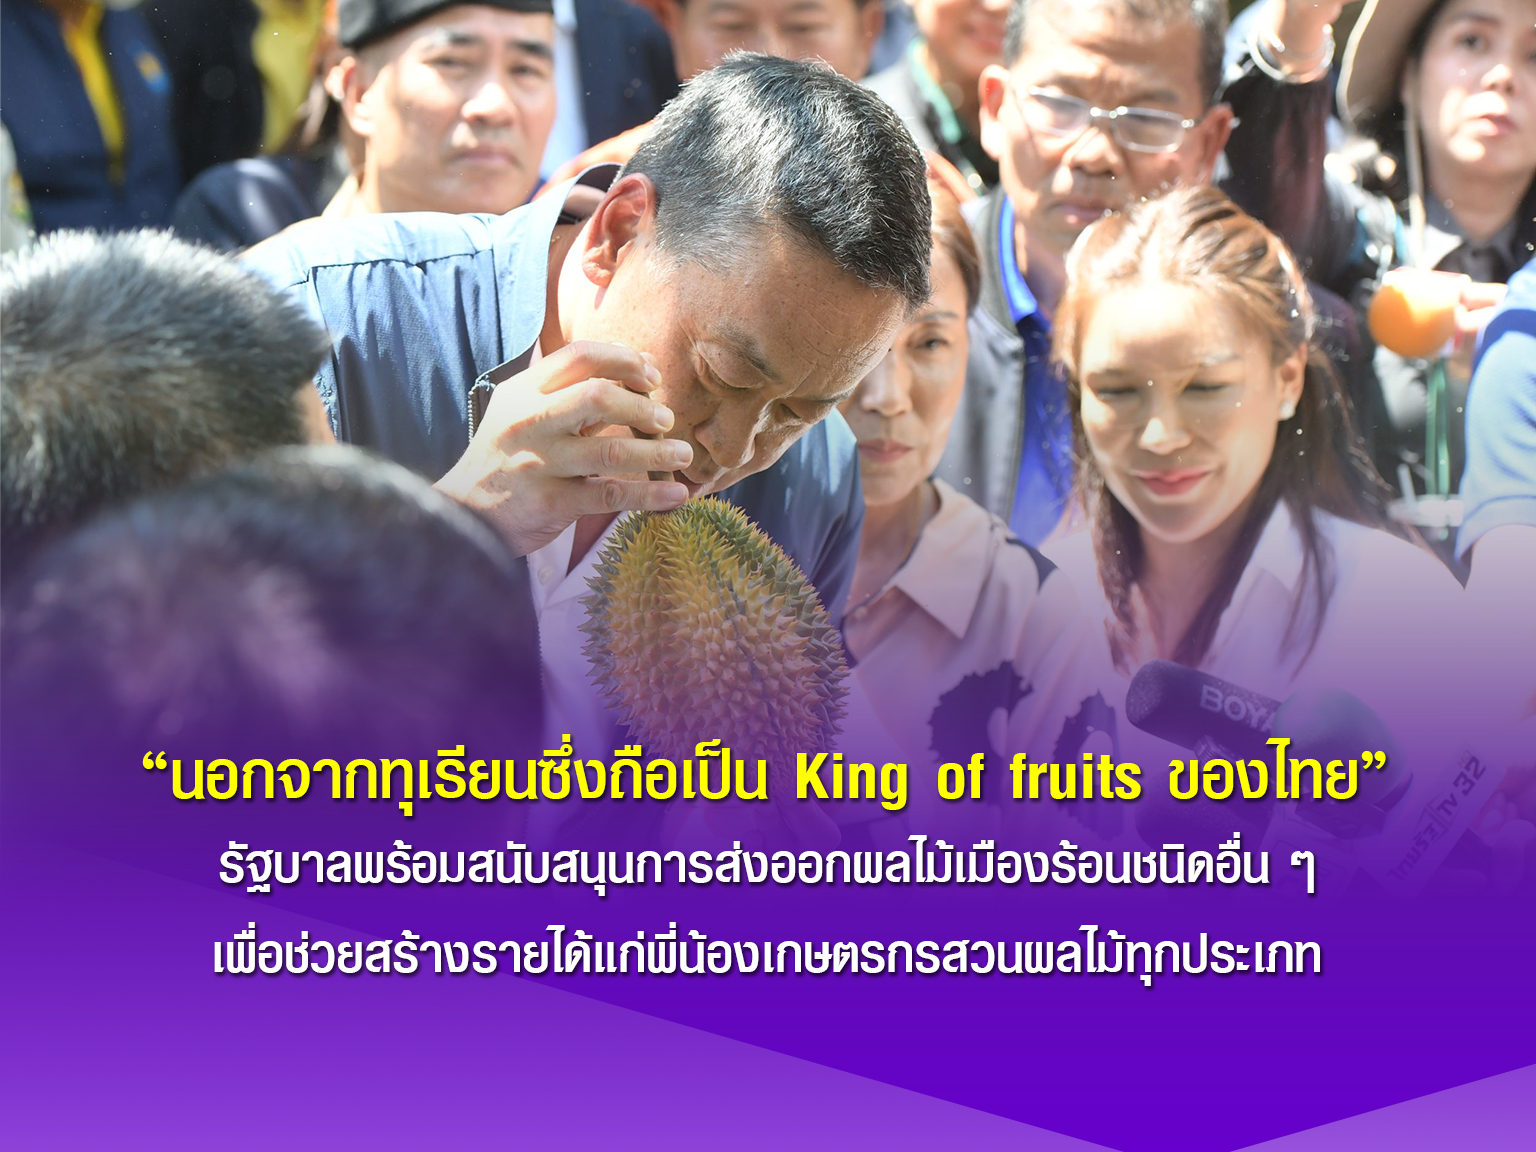 นอกจากทุเรียนซึ่งถือเป็น King of fruits ของไทย รัฐบาลพร้อมสนับสนุนการส่งออกผลไม้เมืองร้อนชนิดอื่น ๆ เพื่อช่วยสร้างรายได้แก่พี่น้องเกษตรกรสวนผลไม้ทุกประเภท